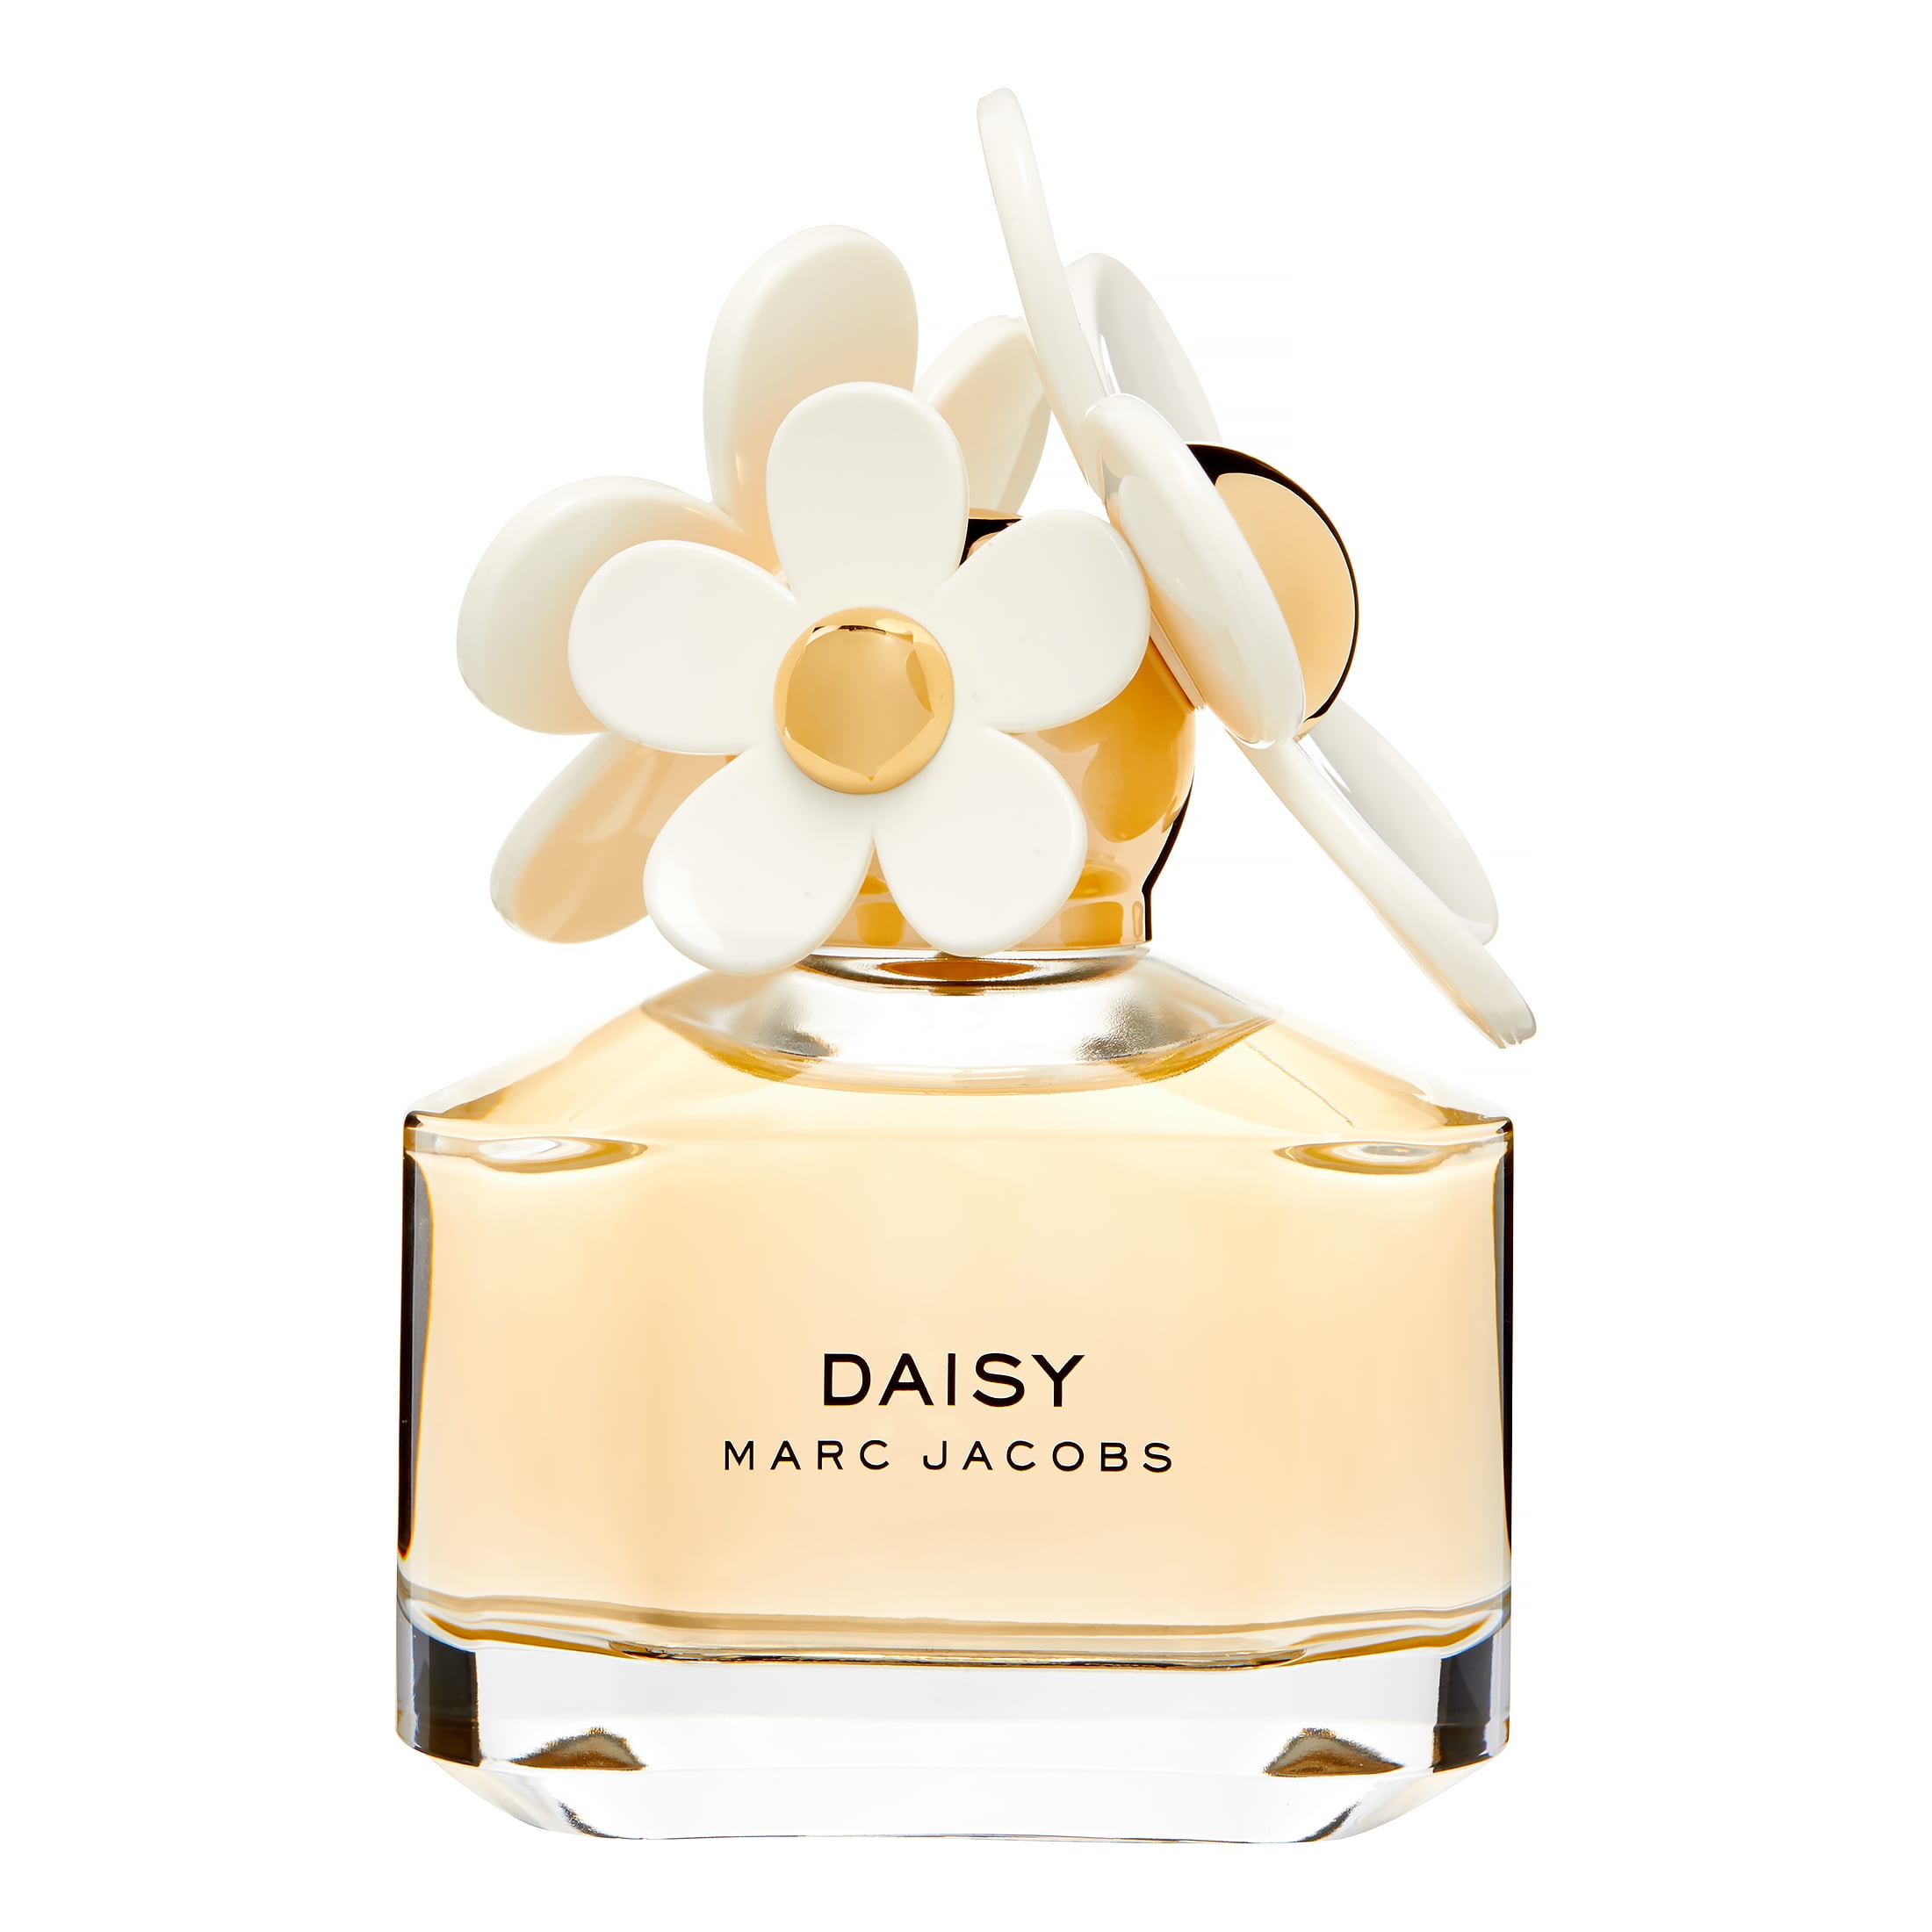 marc jacobs daisy perfume 1.7 oz